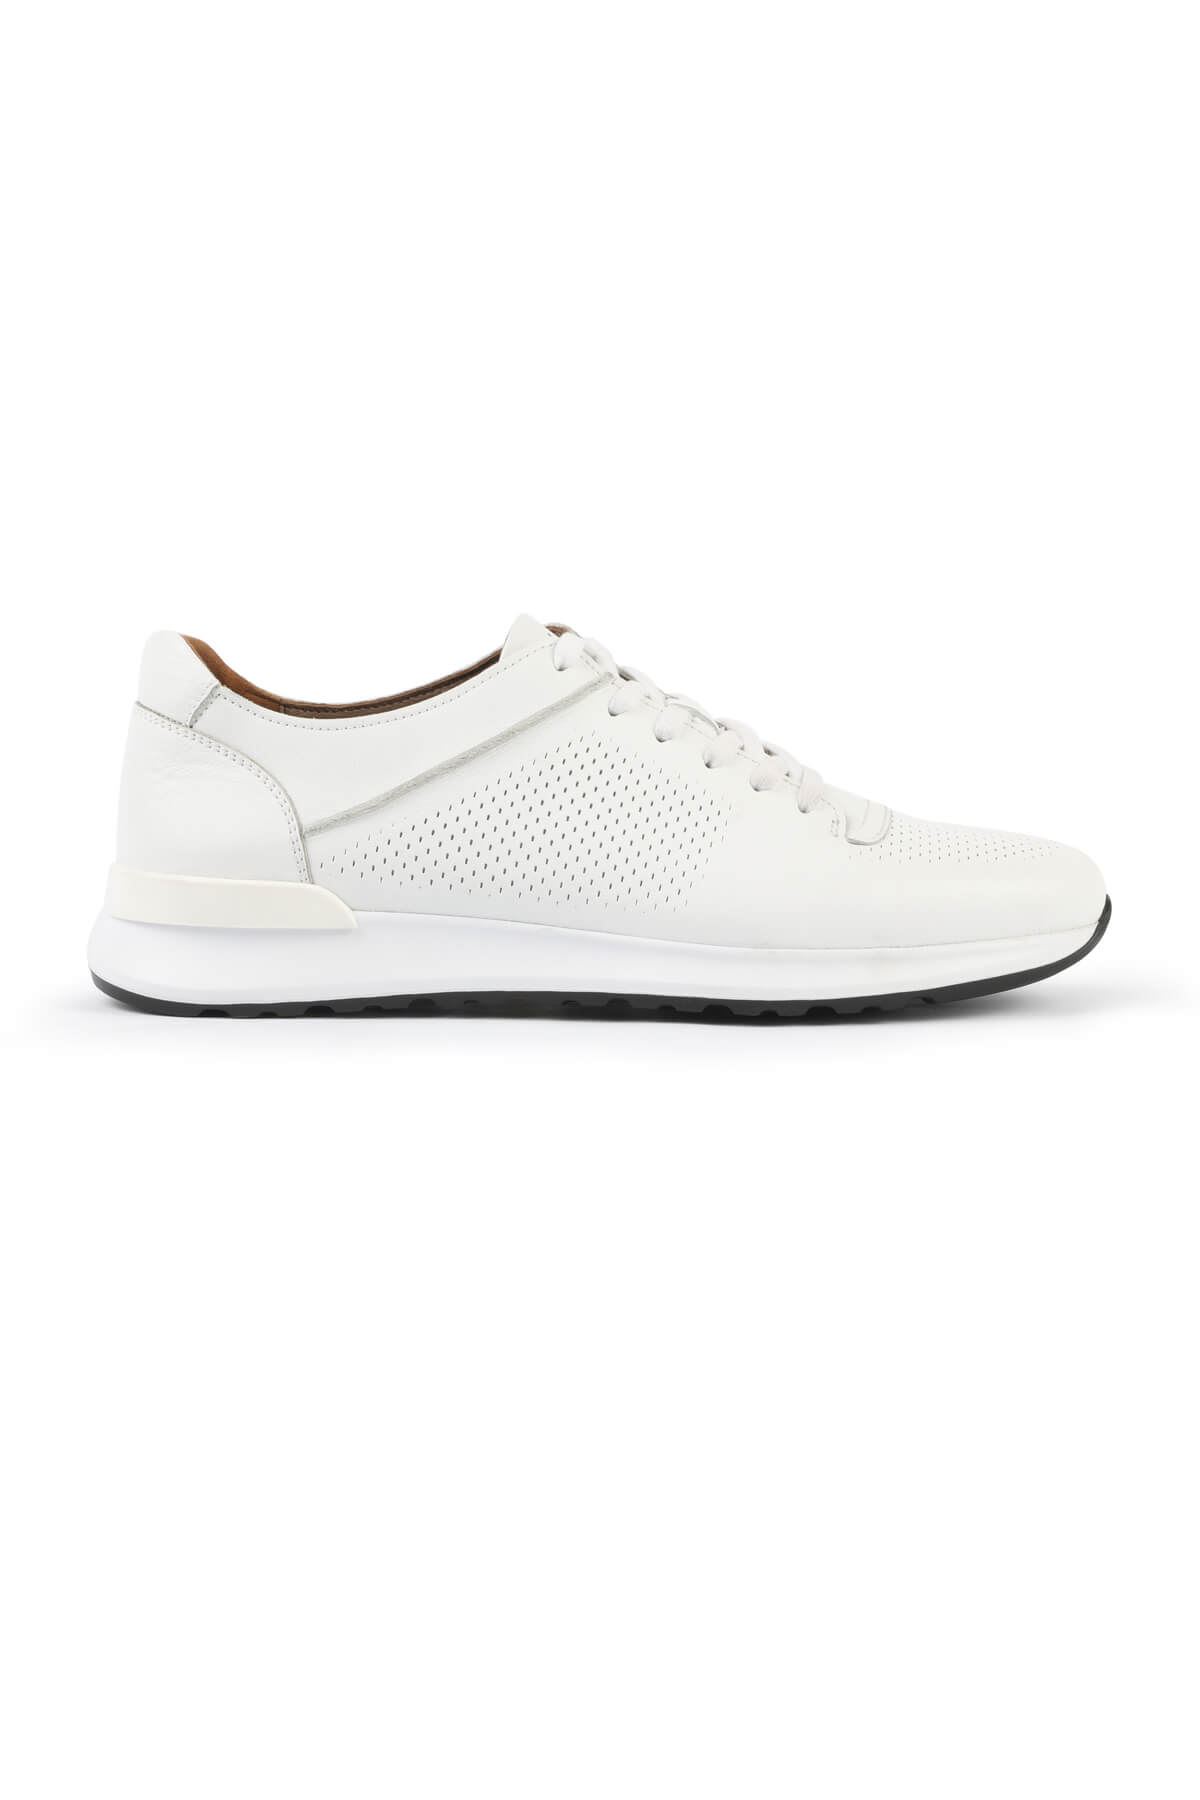 Libero L3045 Beyaz Erkek Spor Ayakkabı 